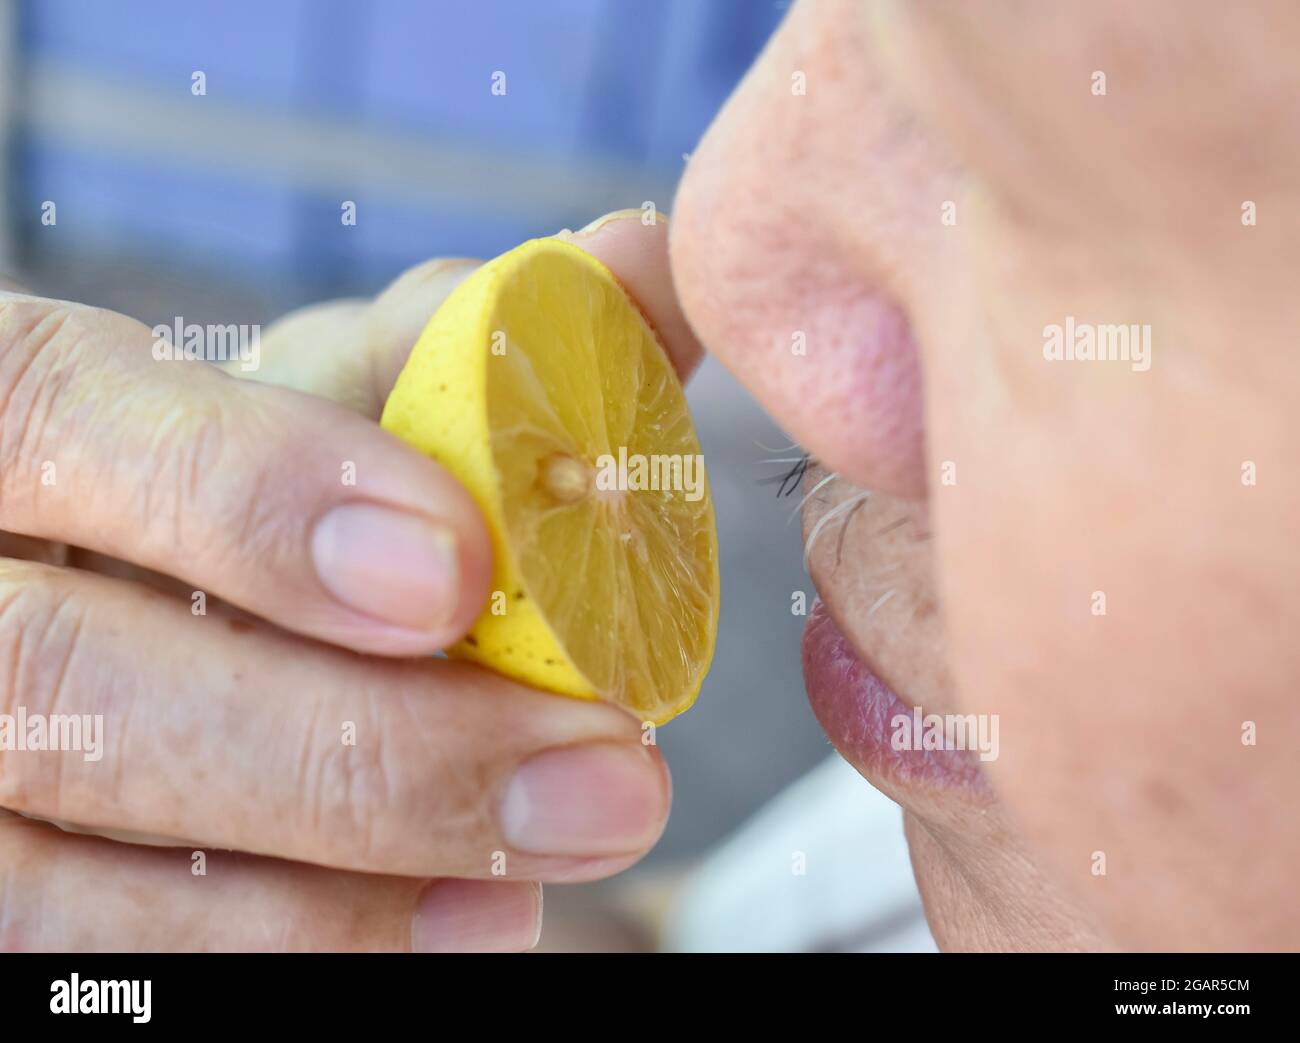 Südostasiatischer, chinesischer und myanmarischer alter Mann mit kalter Grippe bekommt Geruchverlust, genannt Anosmie. Er riecht nach Zitrone, während er zu Hause bleibt. Nahaufnahme Stockfoto